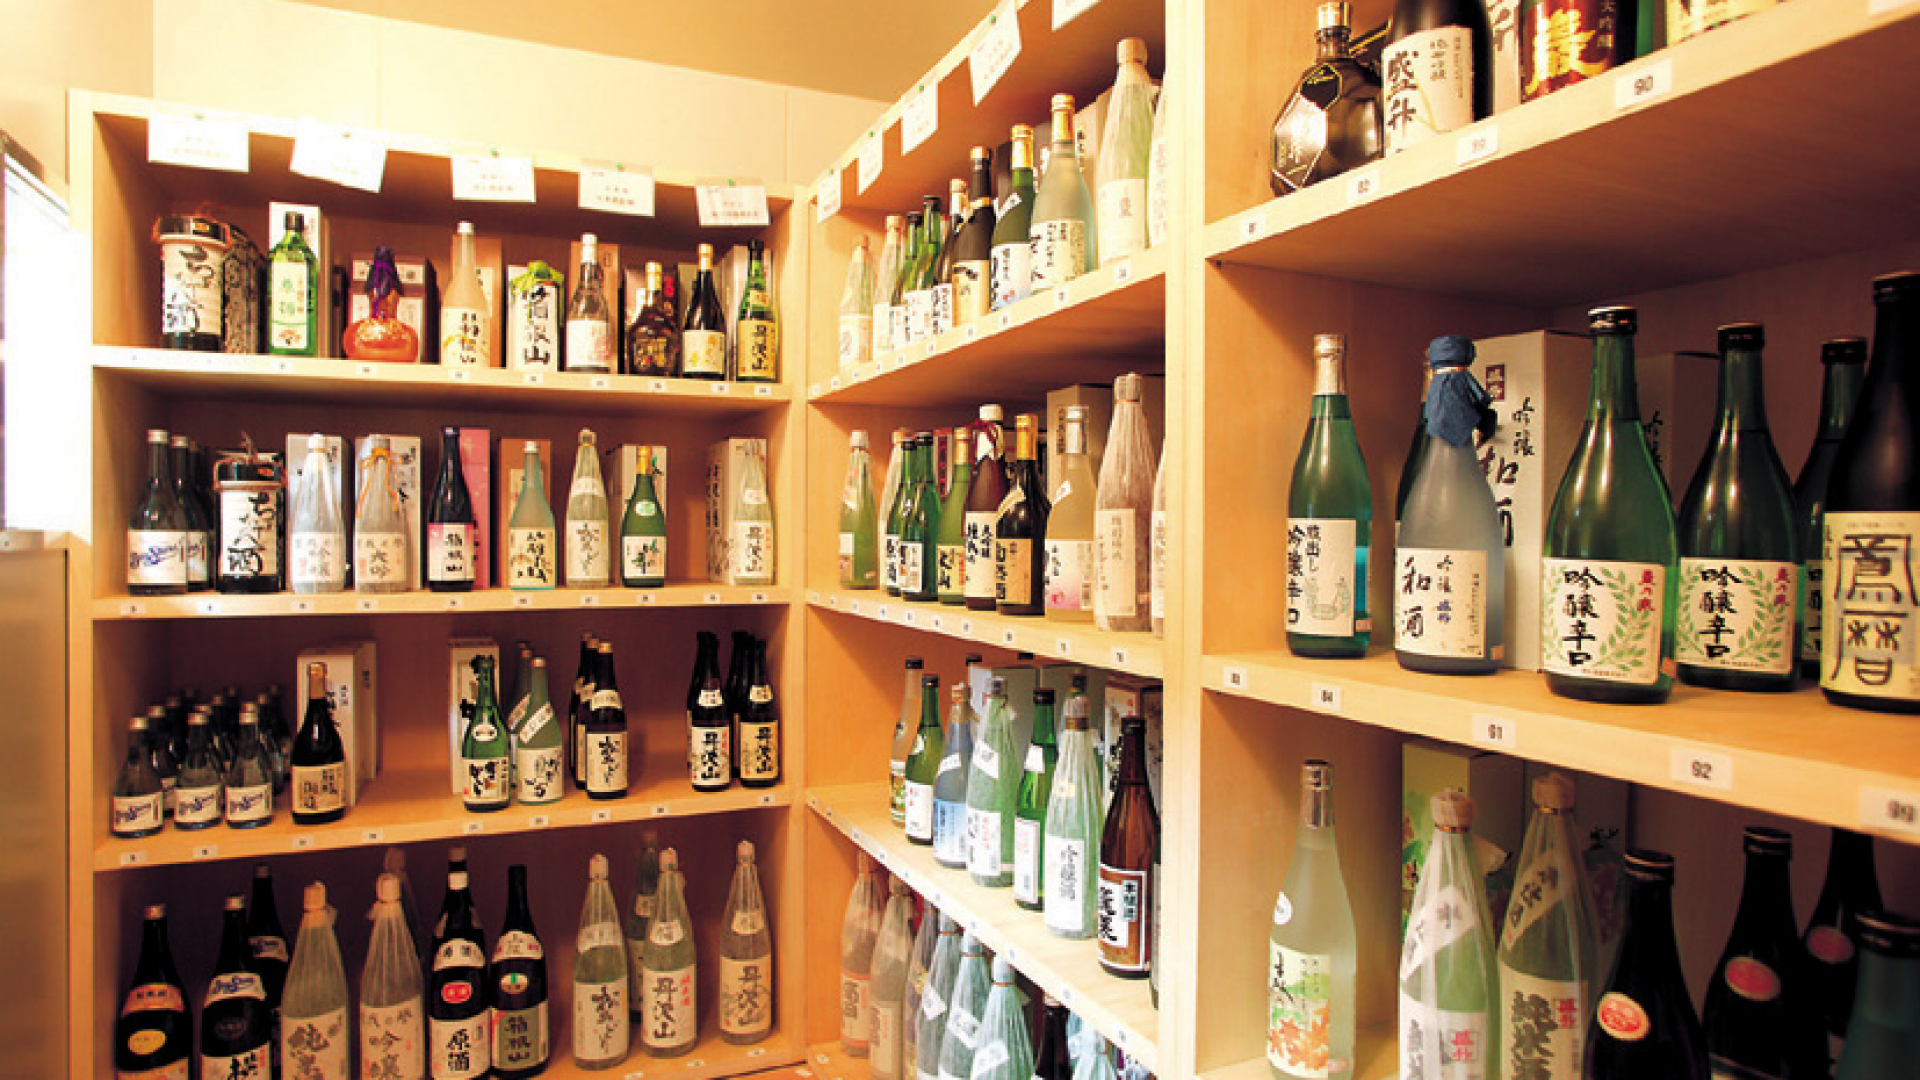 Asociación de fabricantes de sake de Kanagawa